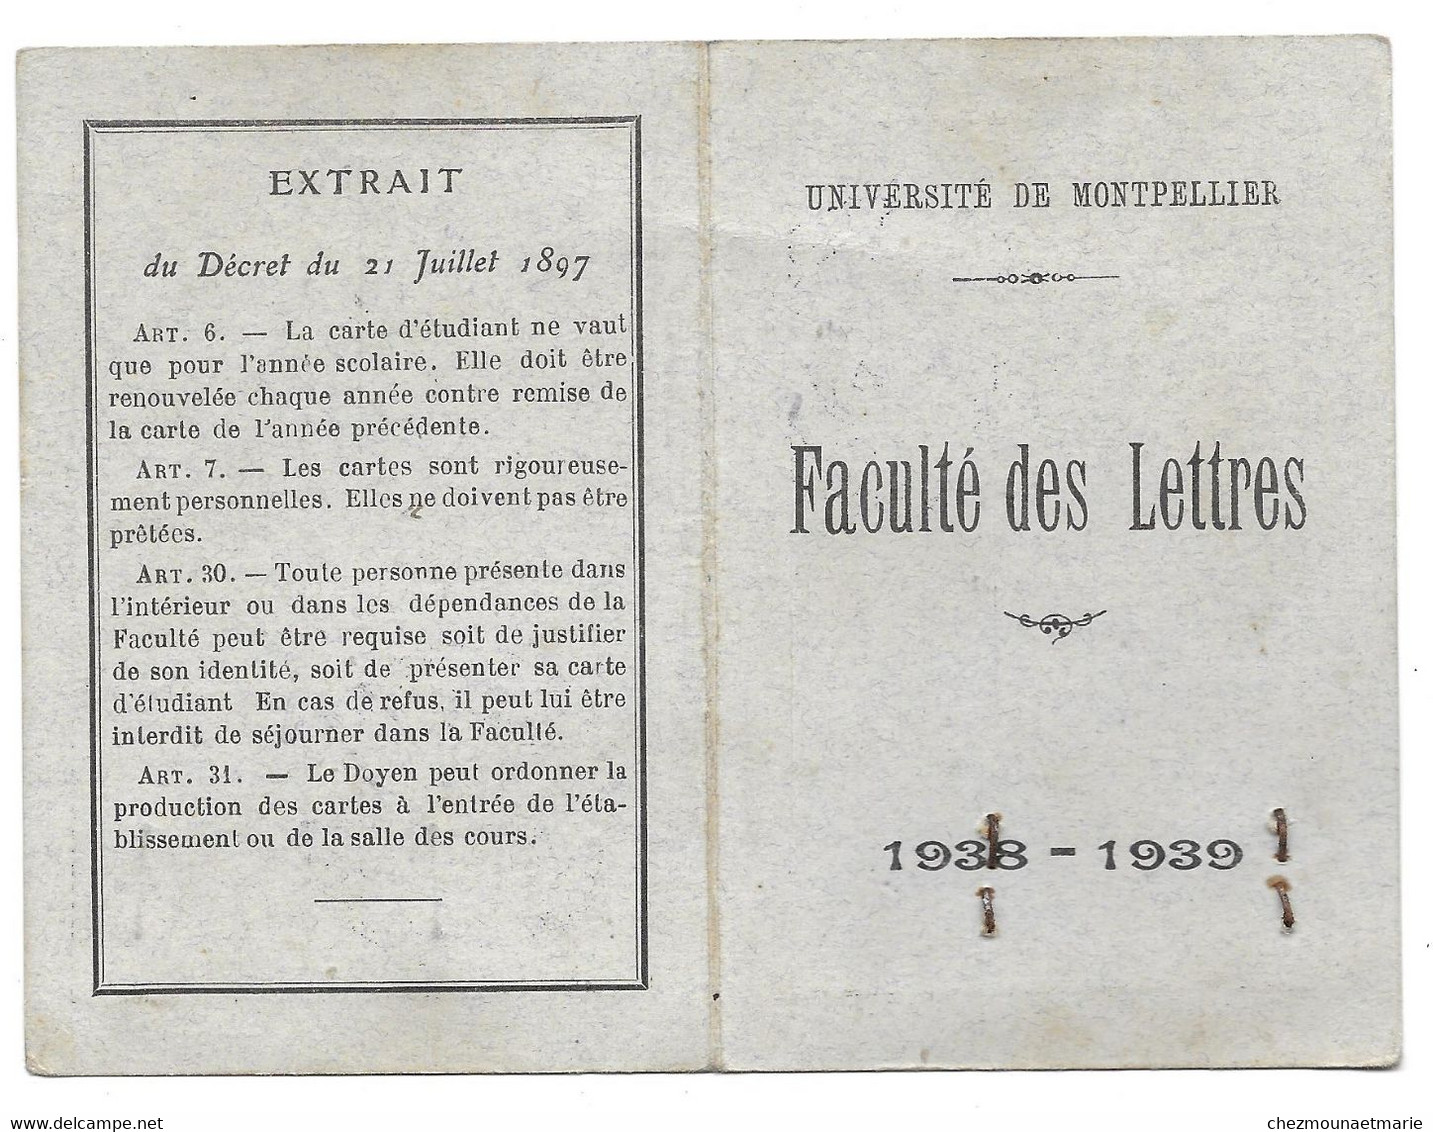 1938 1939 - UNIVERSITE DE MONTPELLIER - M. CARIO ETUDIANT EN HISTOIRE MODERNE FACULTE DE LETTRES - CARTE - Documents Historiques